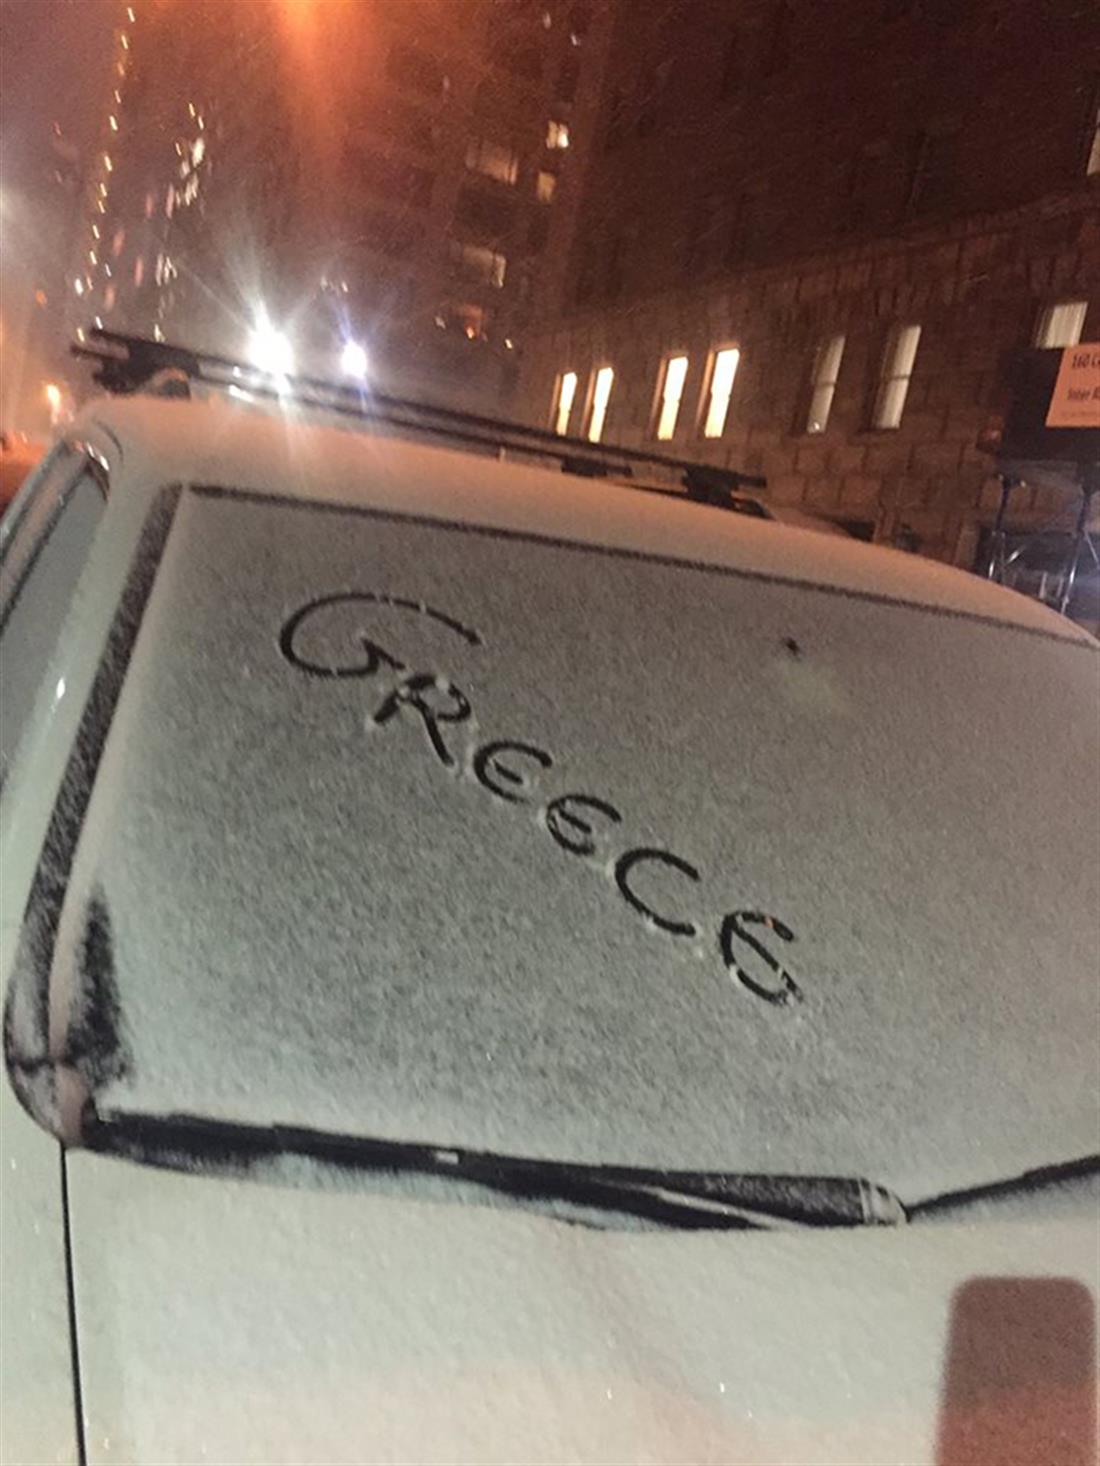 AP - ΗΠΑ - χιόνια - κακοκαιρία - Νέα Υόρκη - snowzzila - Αυτοκίνητο - Ελλάδα - Greece